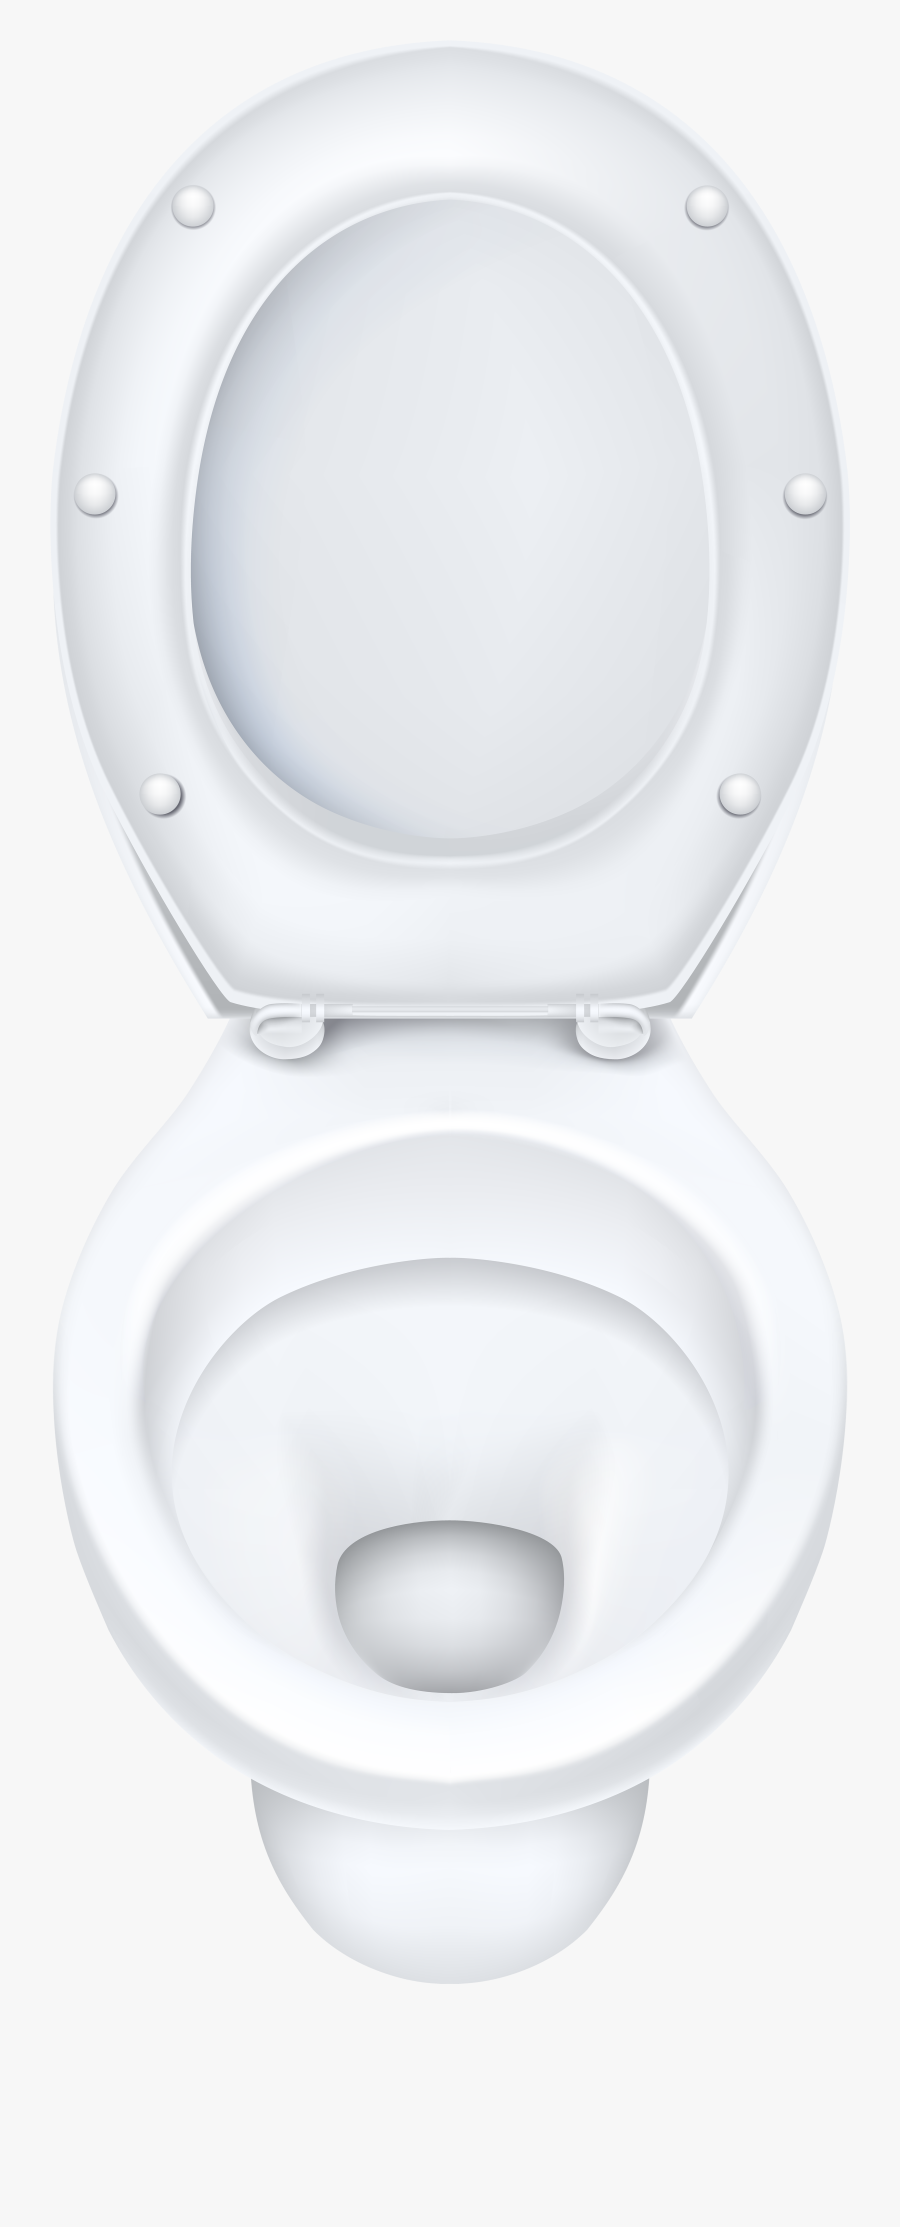 White Toilet Bowl Png Clip Art - Toilet Seat, Transparent Clipart